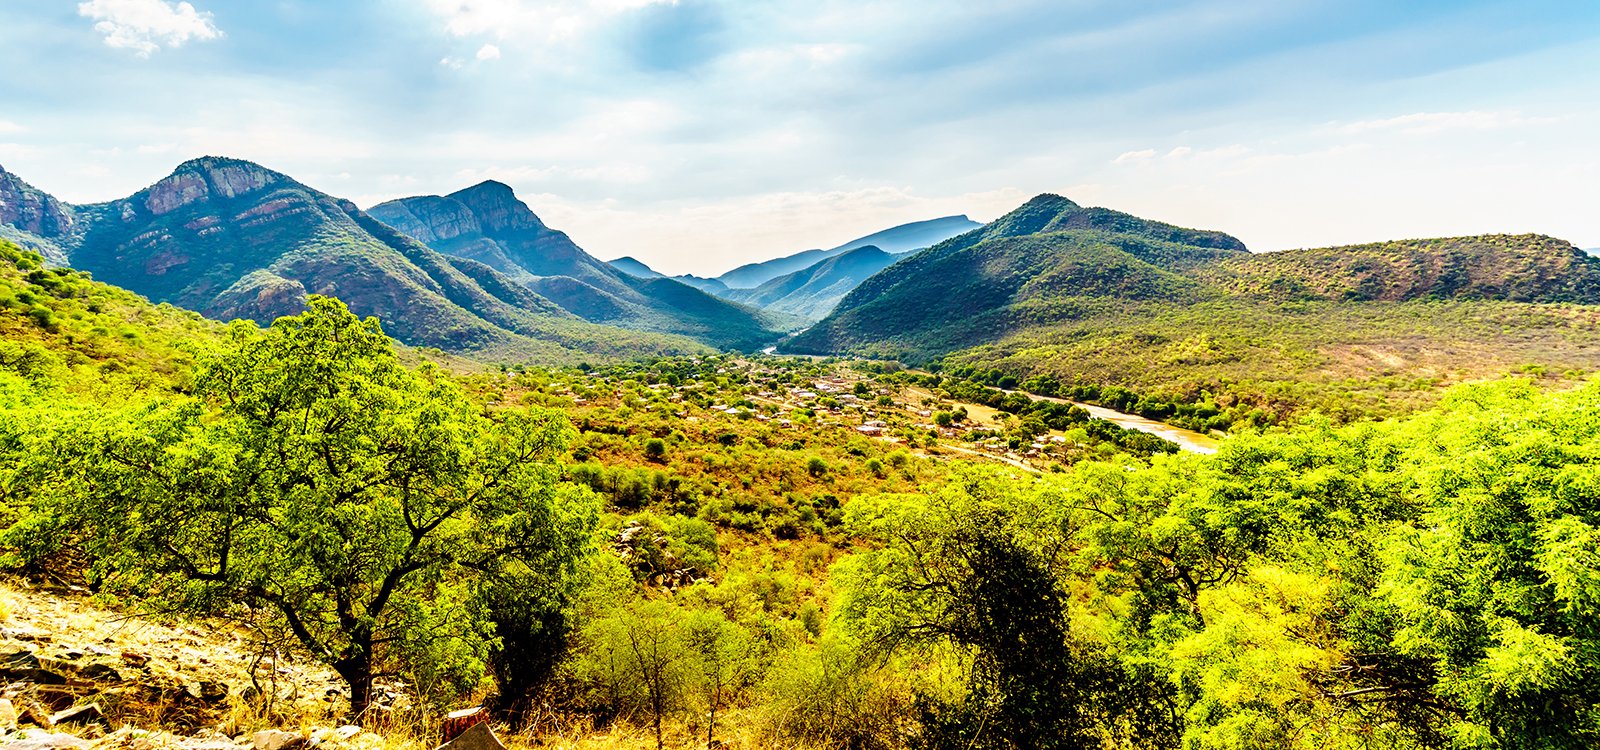 <p>Około dwóch trzecich powierzchni prowincji Mpumalanga jest wykorzystywanych rolniczo, jako pastwiska i pola uprawne.</p>
